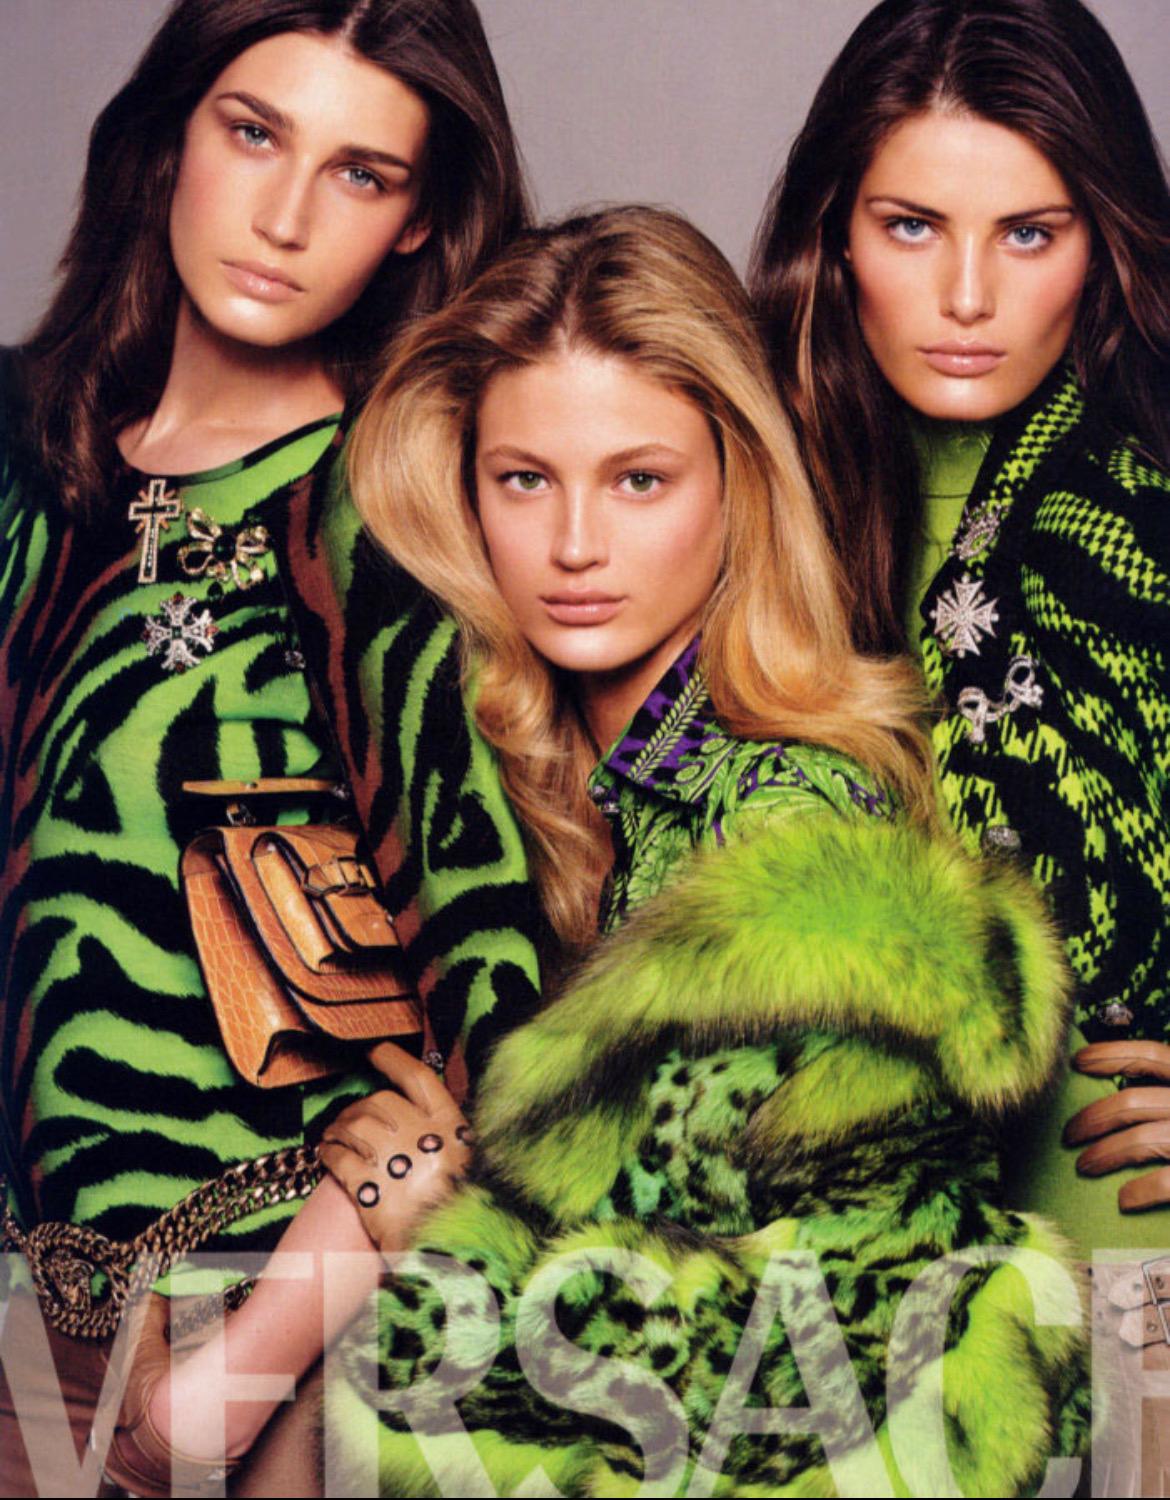 Wir präsentieren ein lilafarbenes Kleid mit Tigerprint von Versace, entworfen von Donatella Versace. In der Herbst/Winter-Kollektion 2004 wurde derselbe Print in Gelb/Orange bei den Looks 8 und 11 gezeigt. Dieses wunderschöne dunkelviolette Kleid